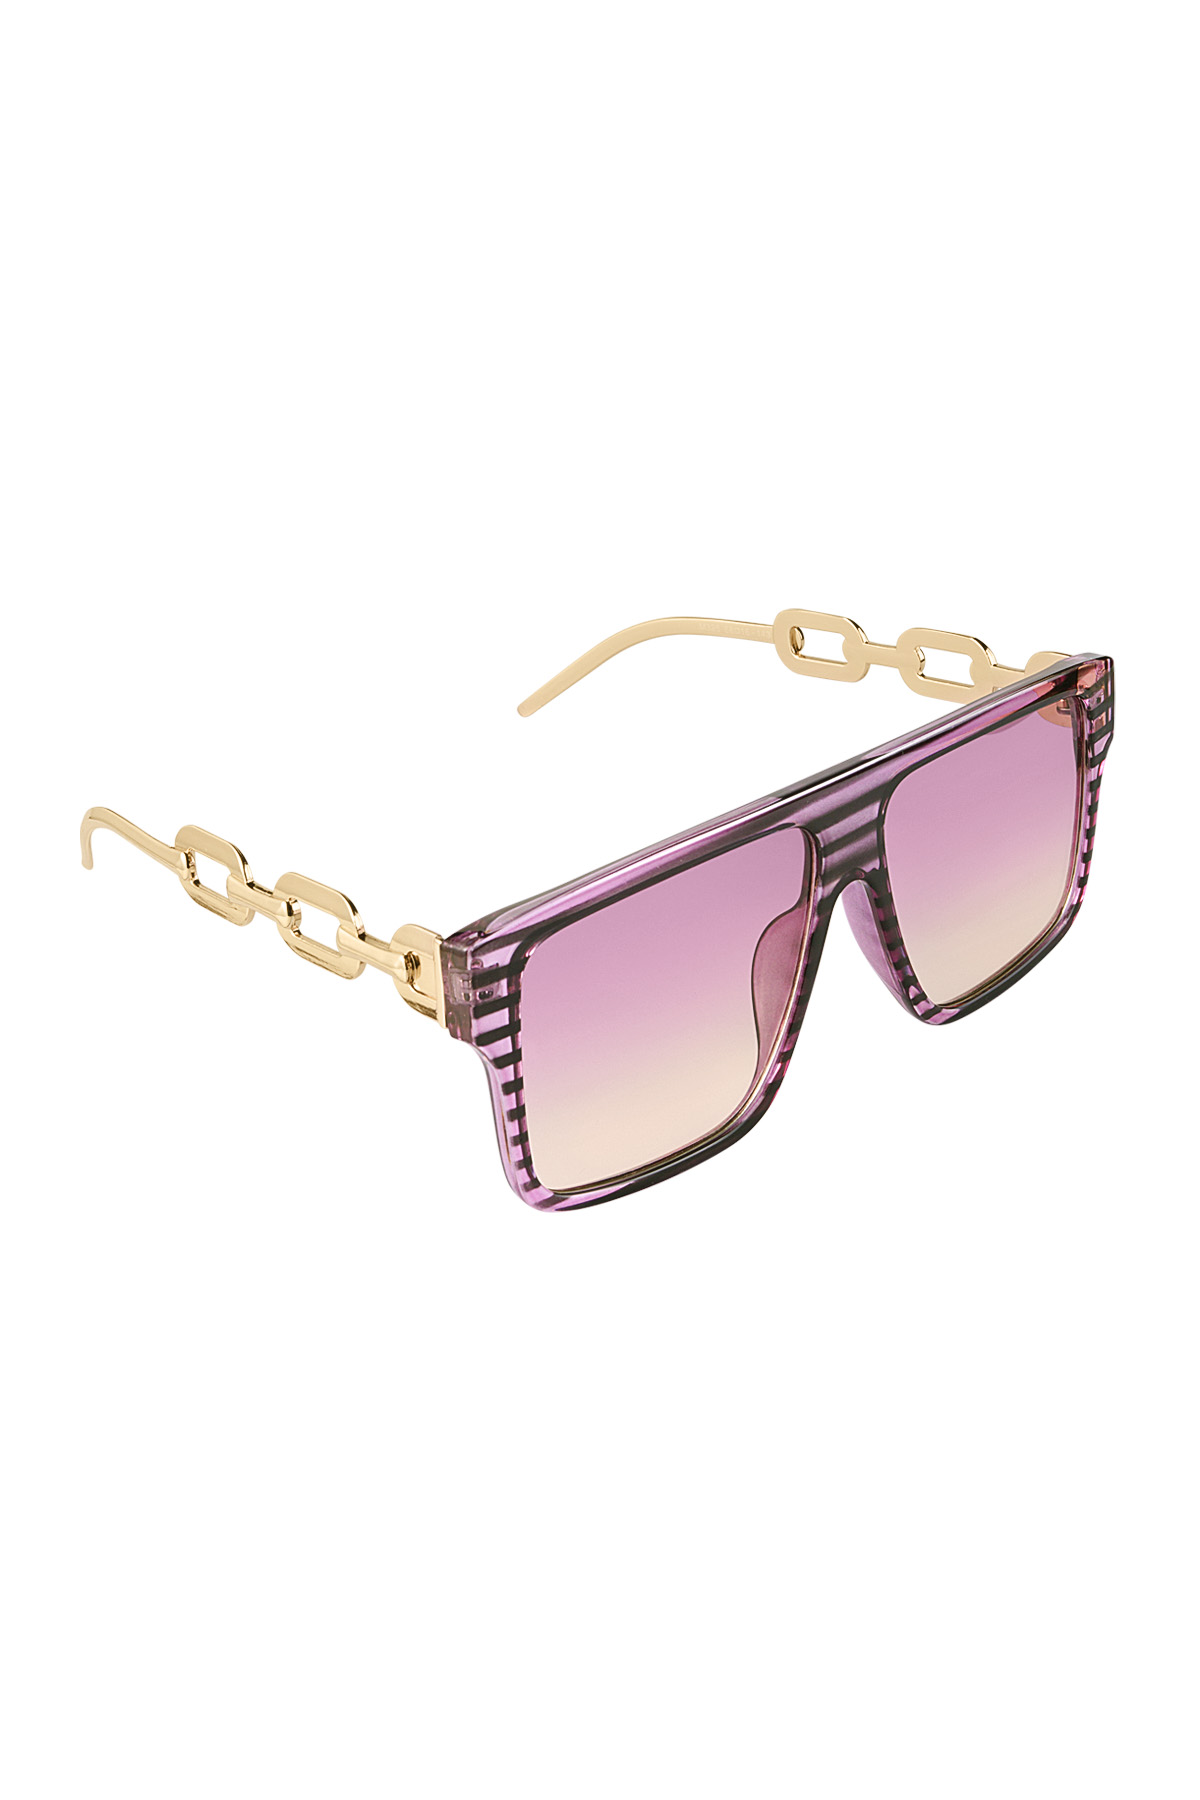 Sonnenbrillenbein mit Glied – schwarz/rosa